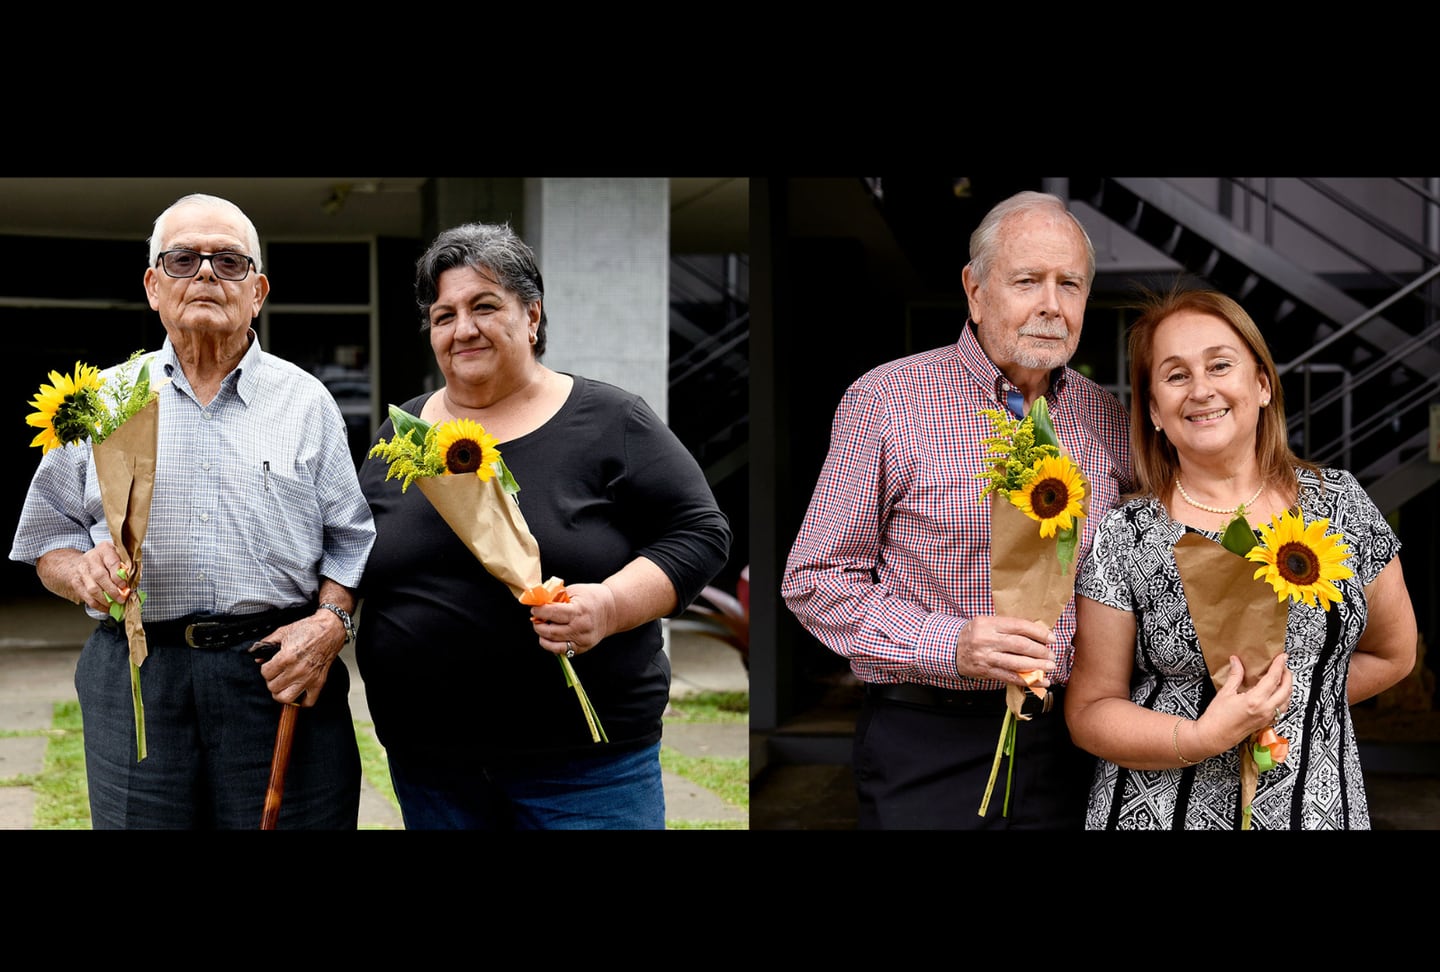 Estos son cuatro de las personas que han donado su cuerpo a la UCR.

Fotografía: UCR